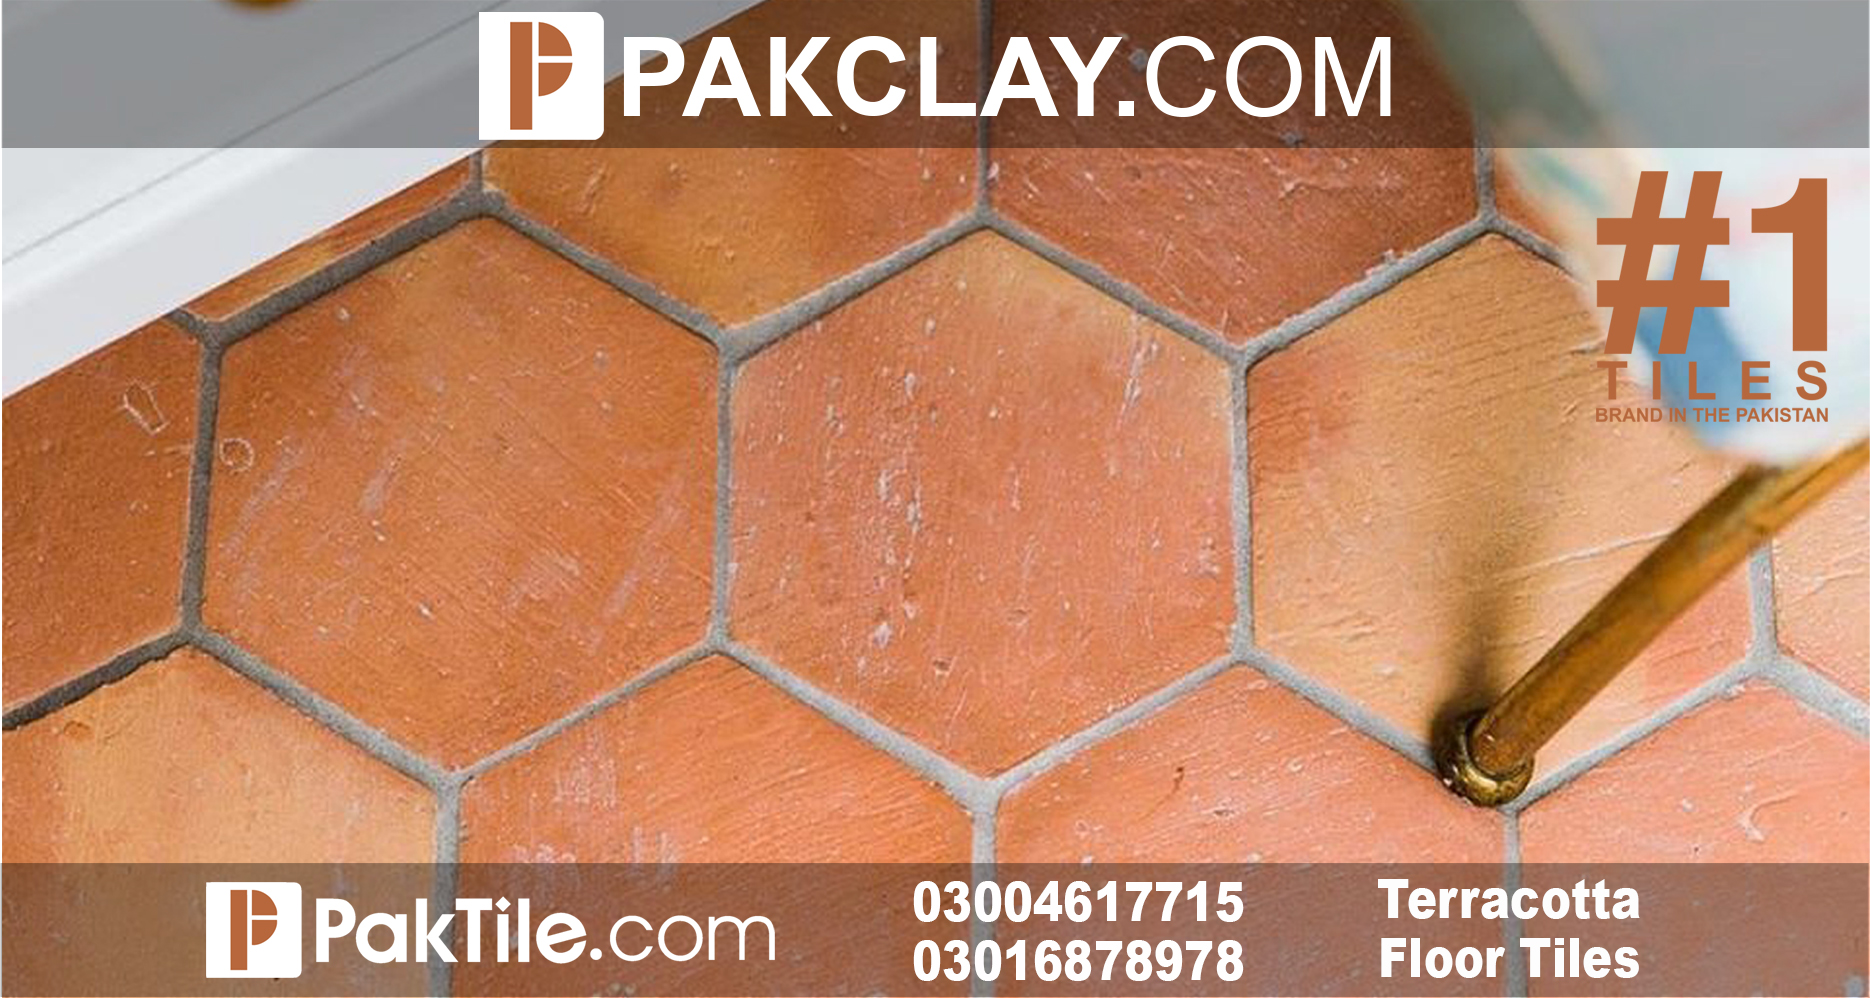 Hexagon Floor Tiles Price in Islamabad